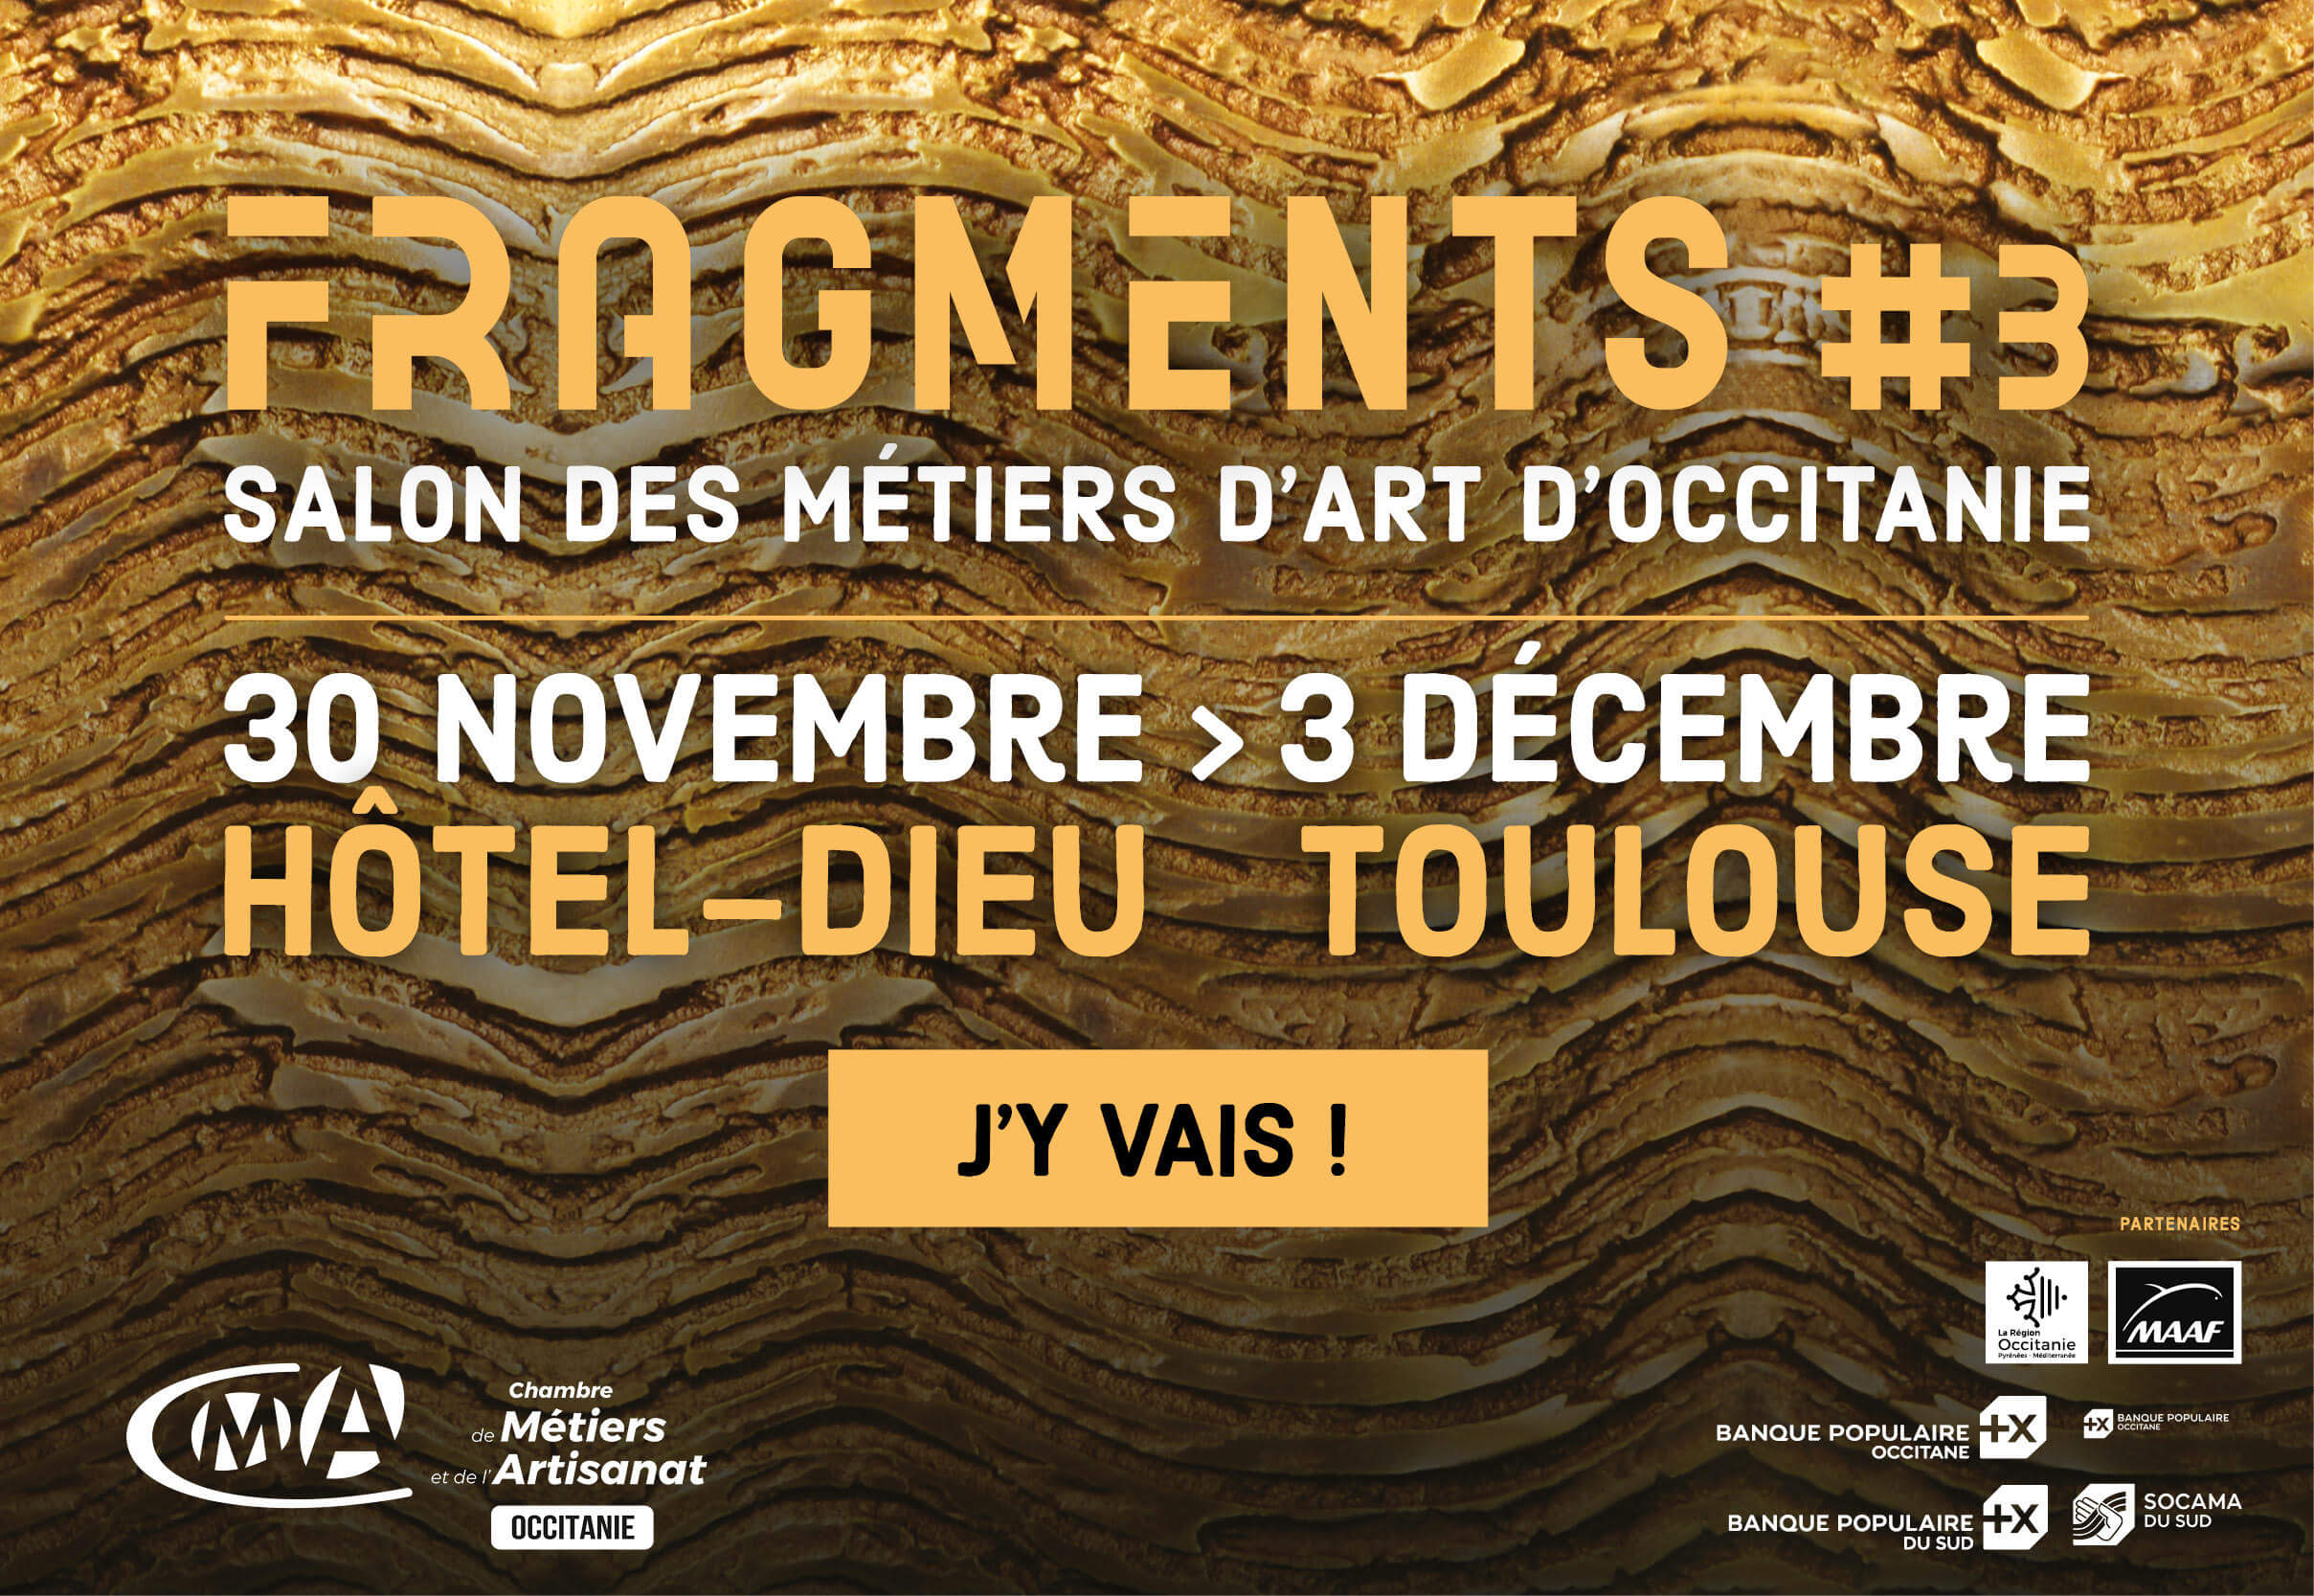 Fragments - Salon des Métiers d'Art d'Occitanie news